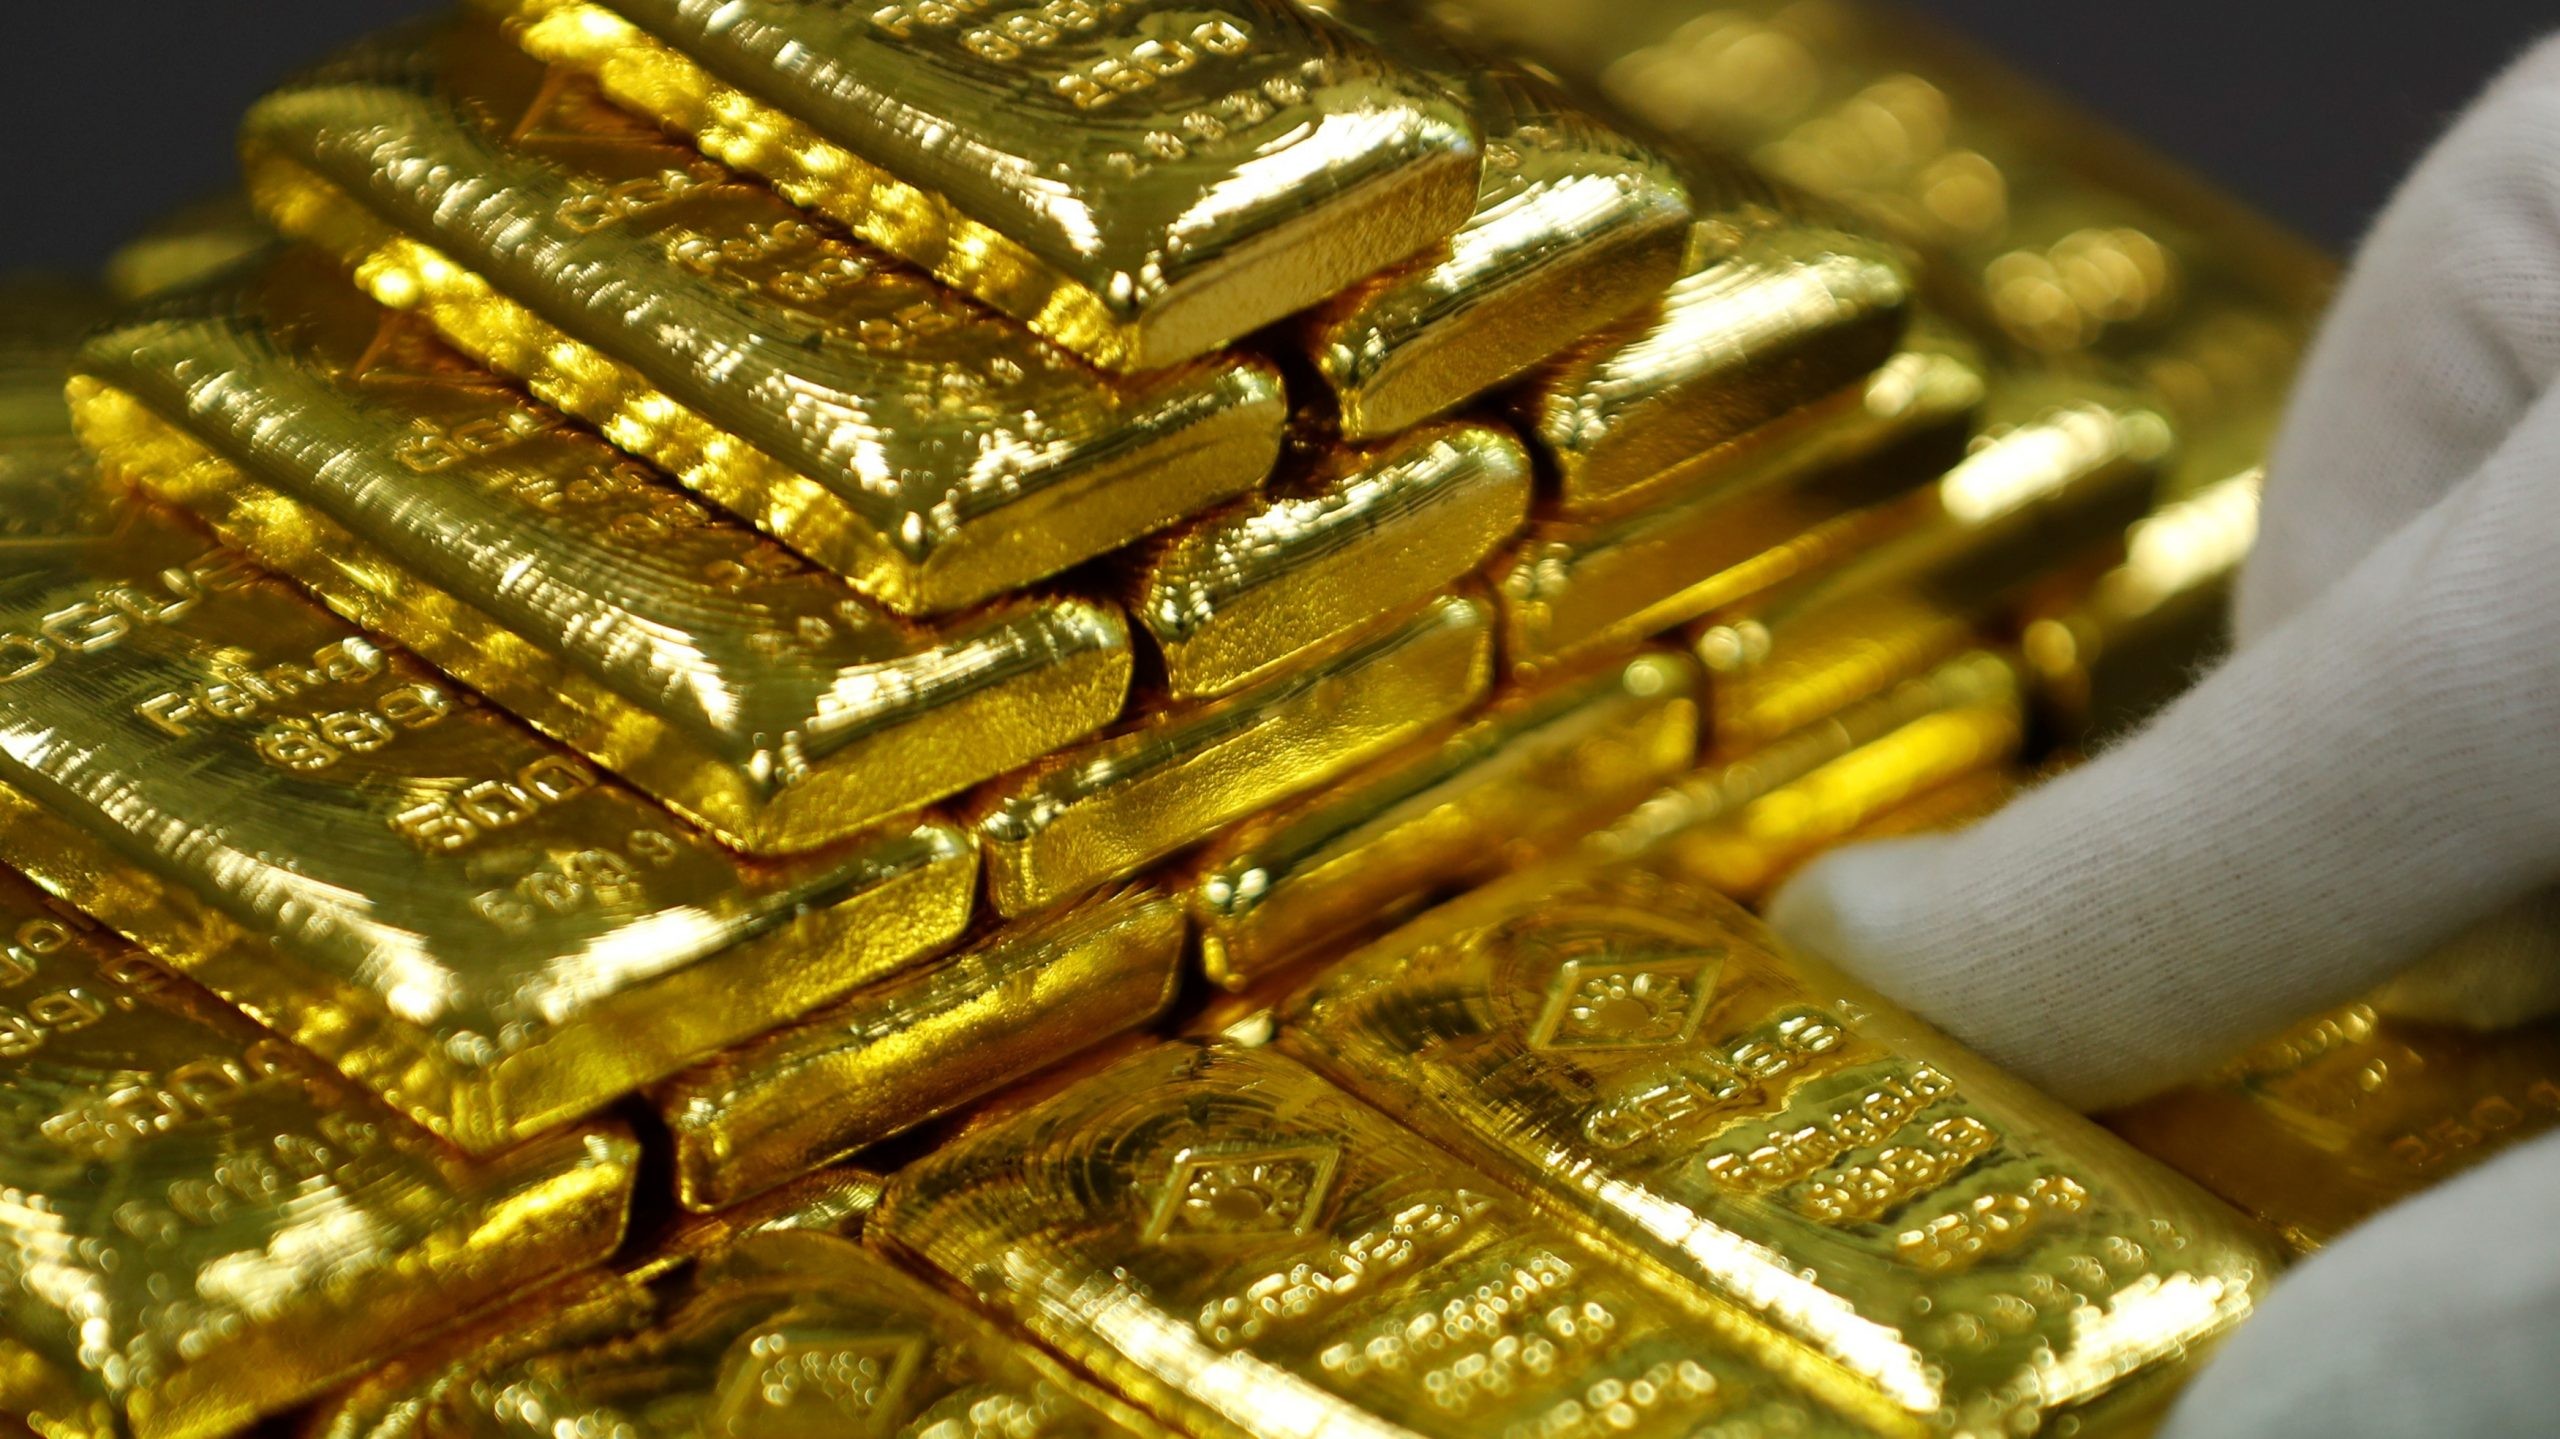 
Số lượng vàng dự trữ trên thế giới gia tăng đáng kể trong vài năm trở lại đây
